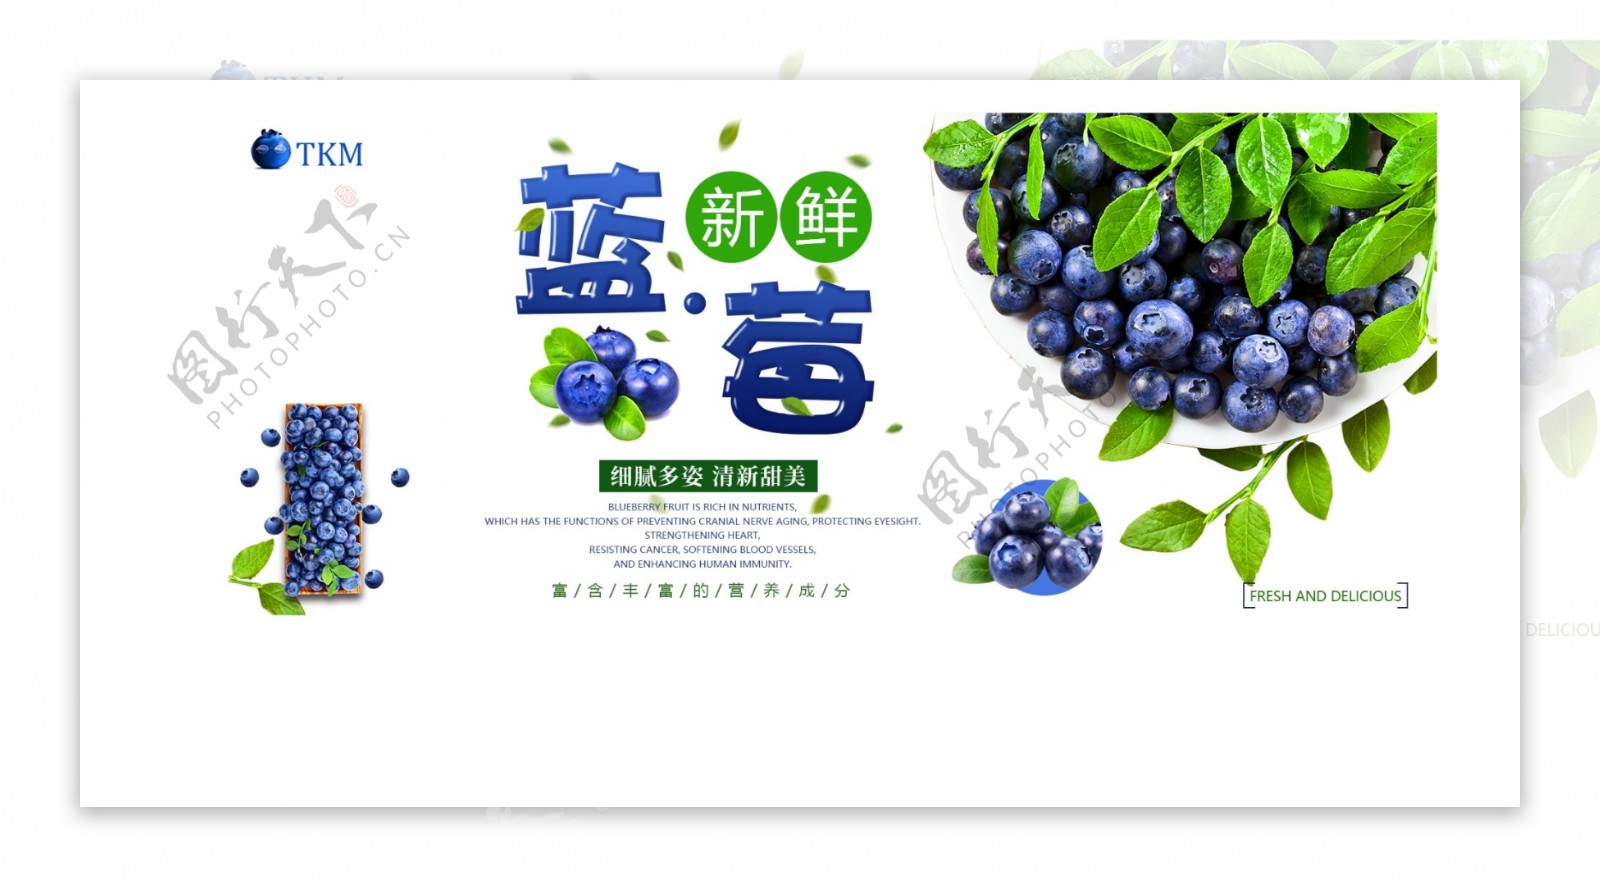 蓝莓banner